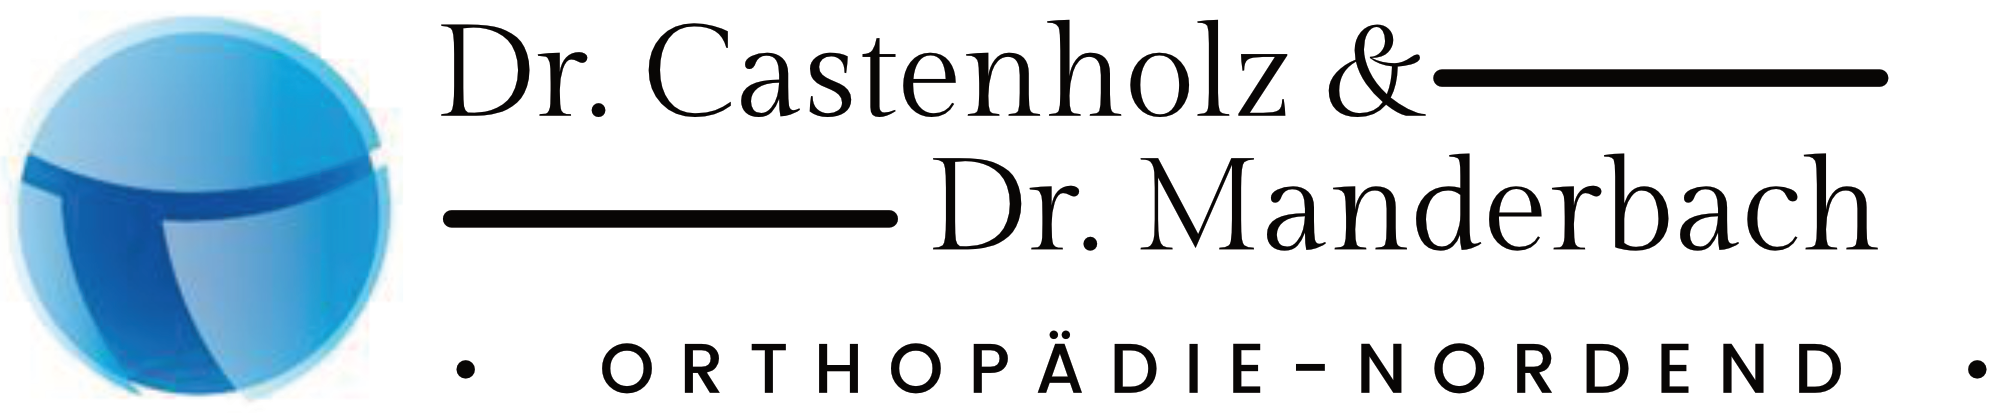 Dr.Castenholz & Dr.Manderbach